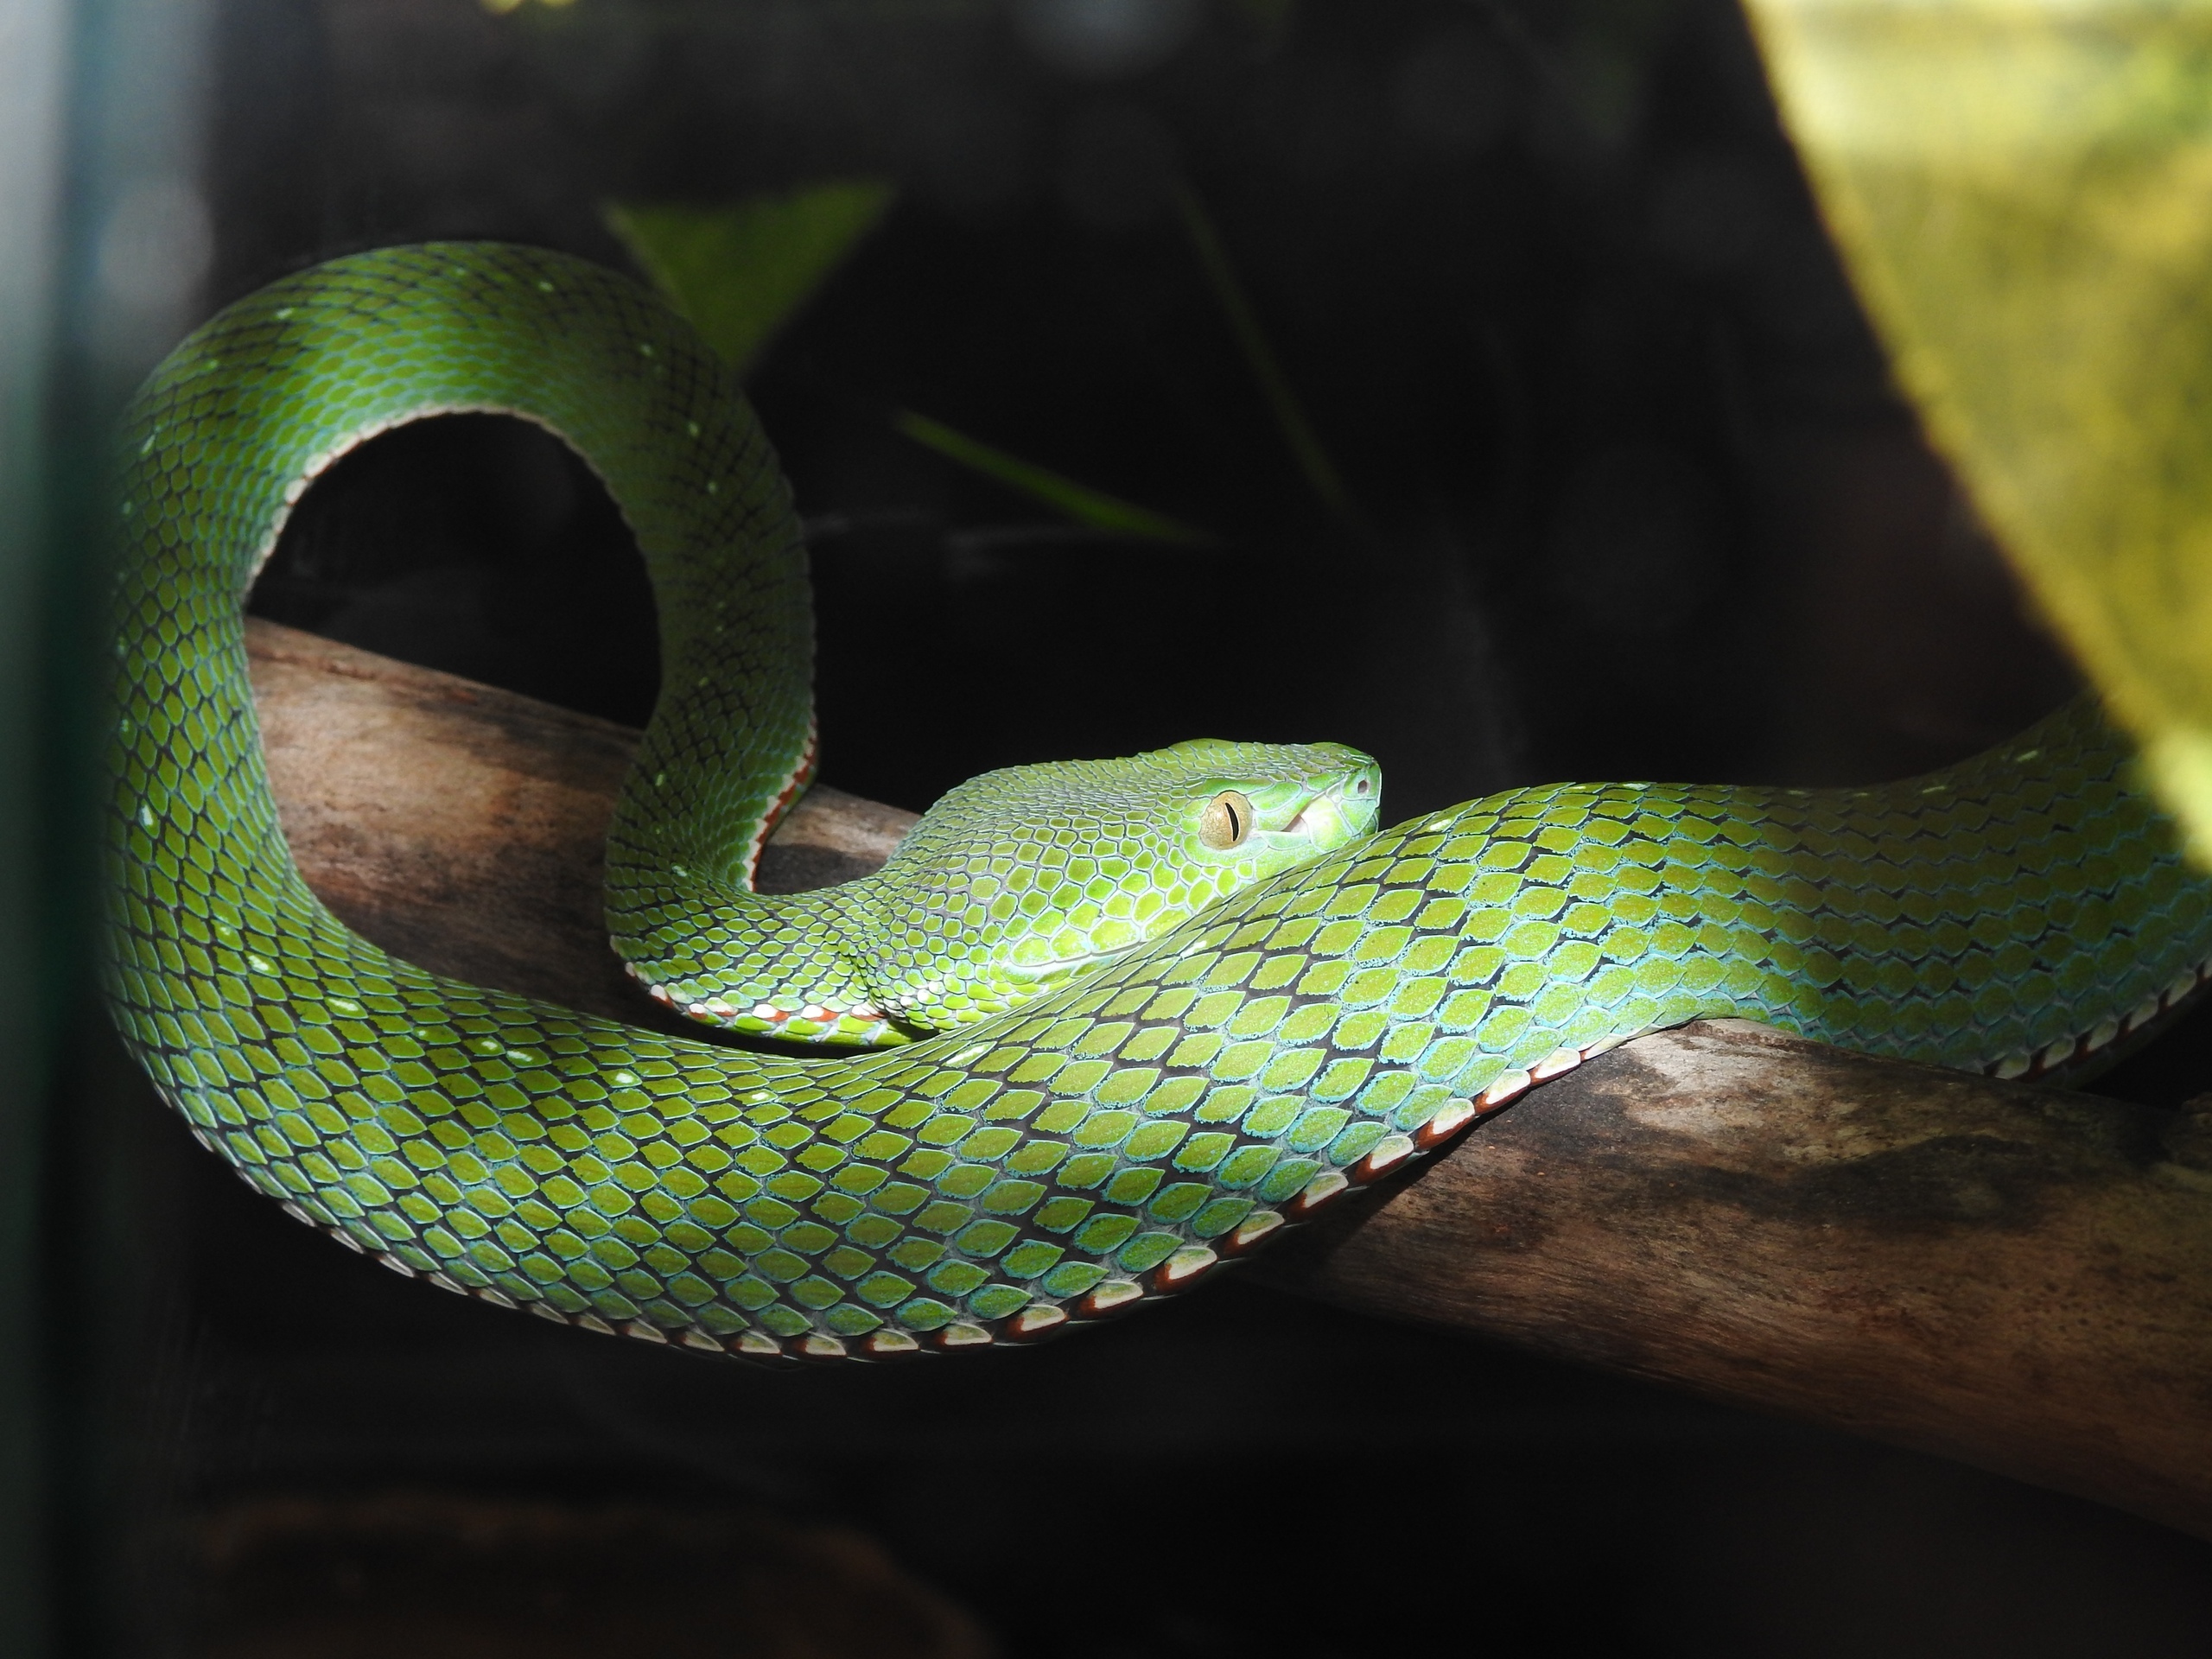 змеи вьетнама описание